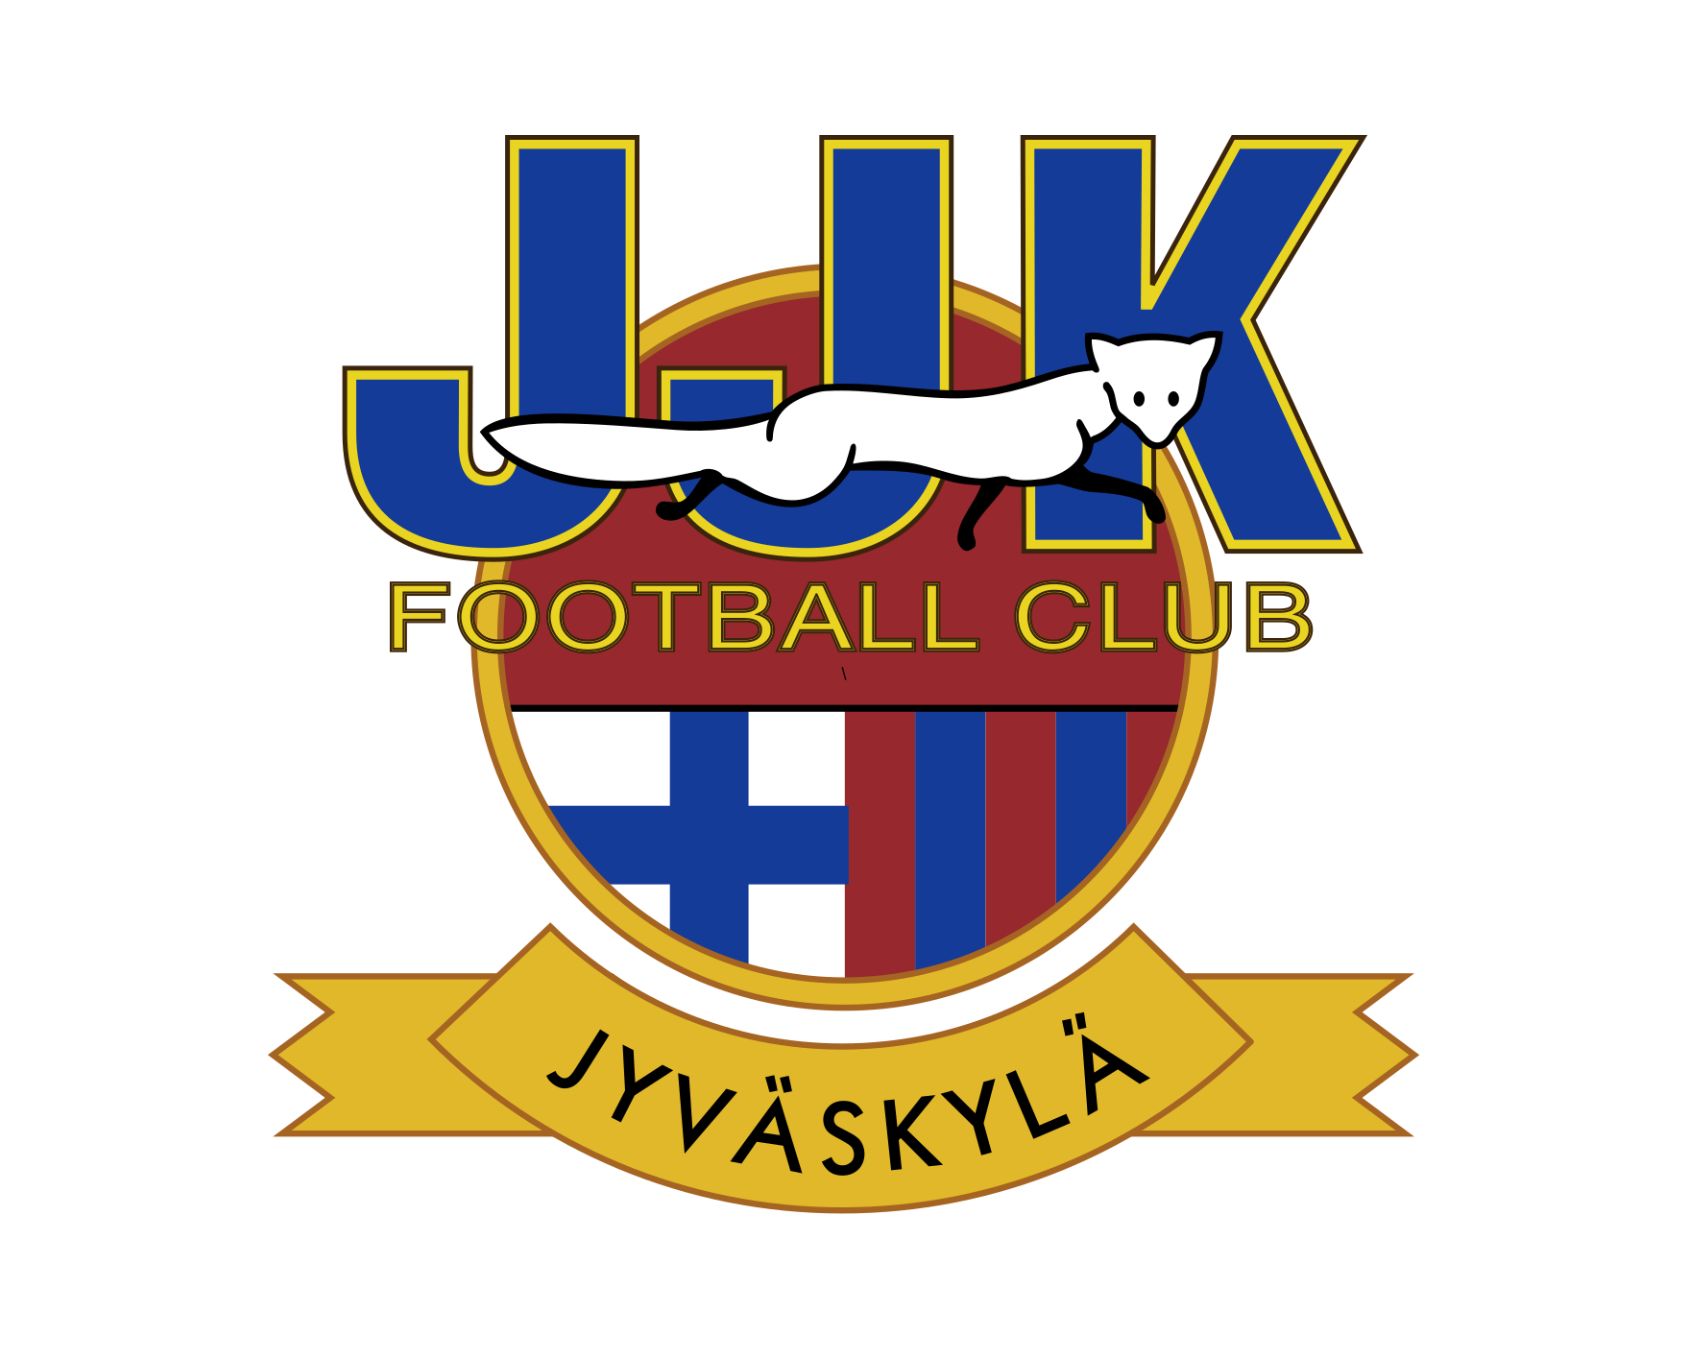 jjk-jyvaskyla-13-football-club-facts